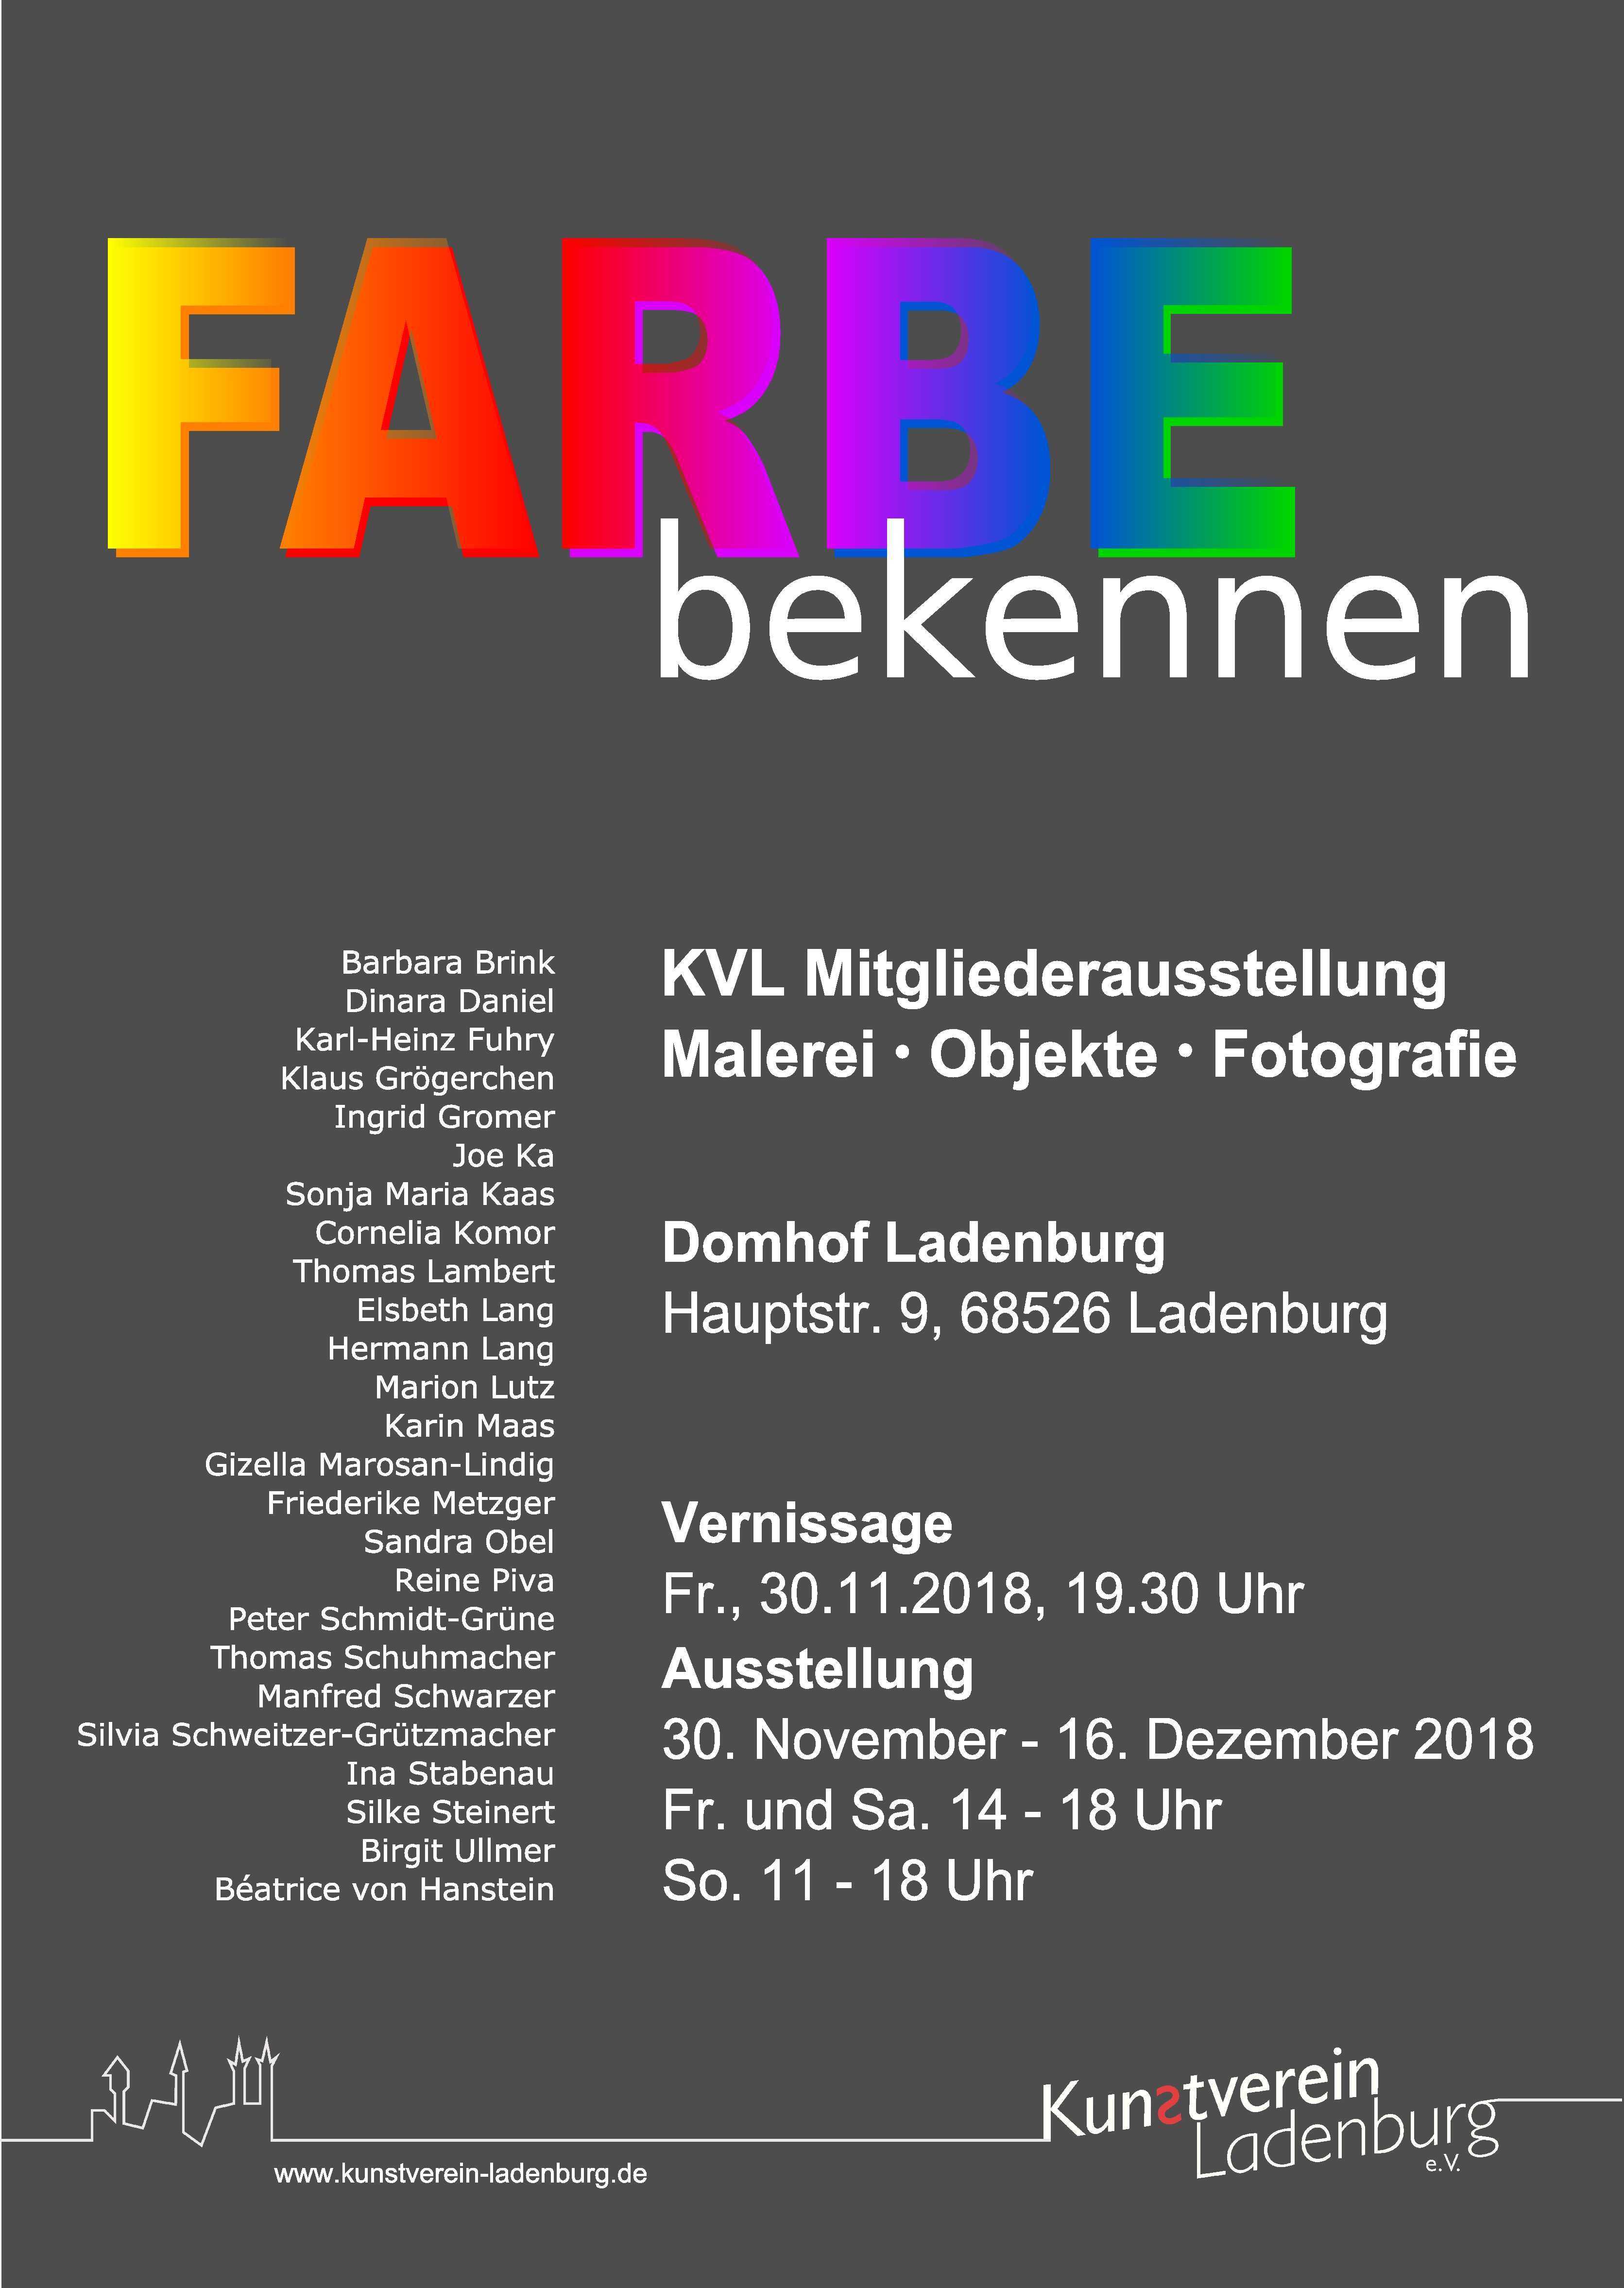 /images/kvl/Ausstellungen/20181130_FarbeBekennen/original/00_plakat farbe bekennen_plus.jpg